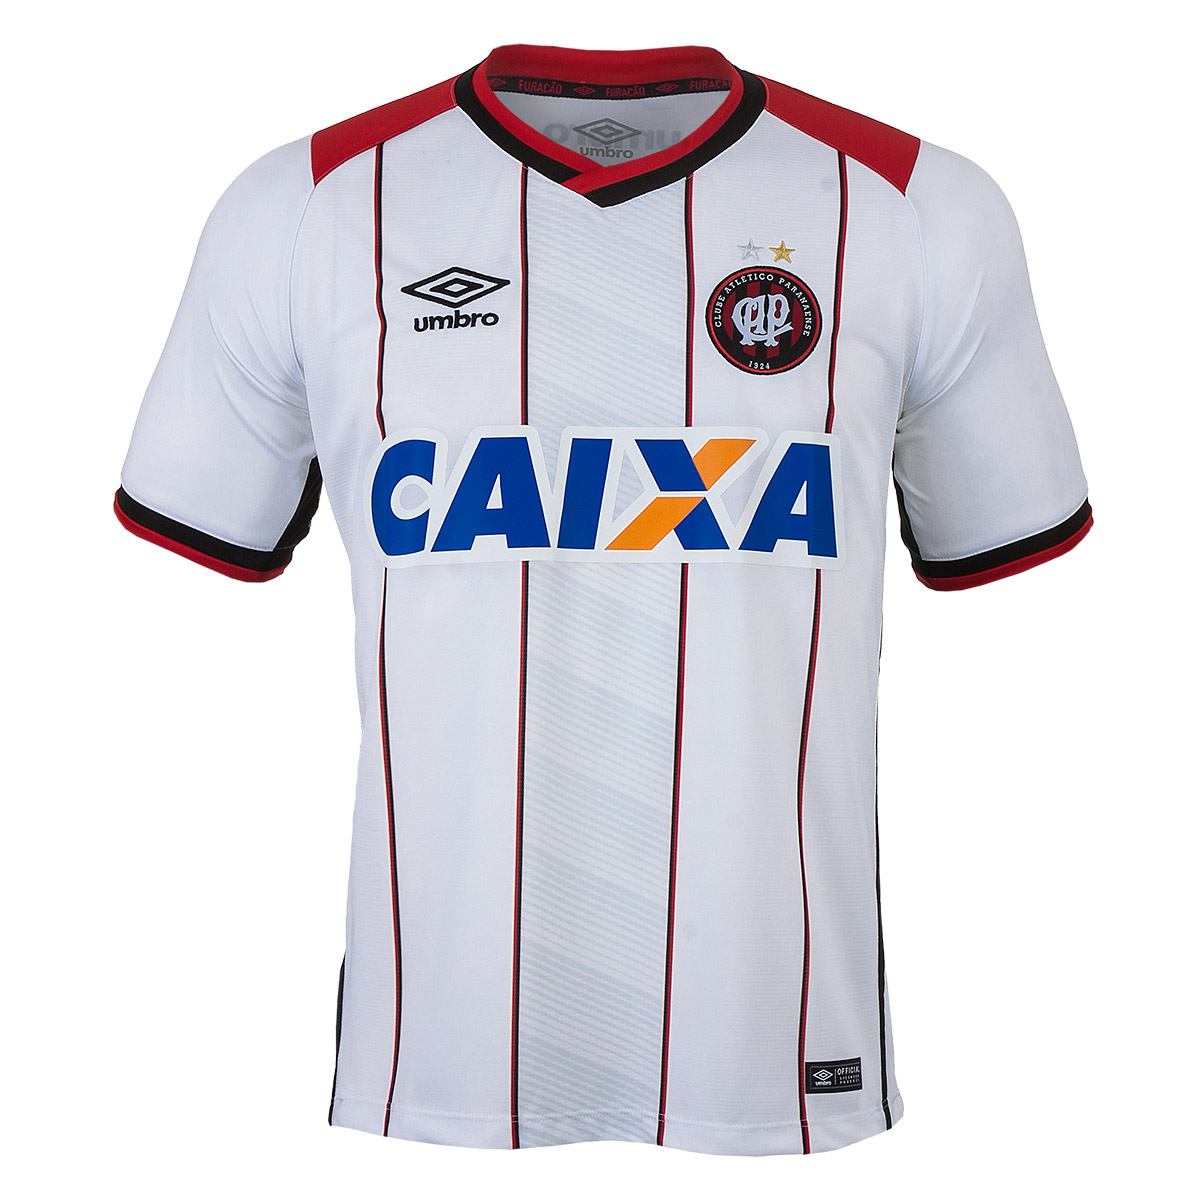 Camisa Masc. Umbro Of. Atlético Paranaense 2 2016 - Branco/Vermelho